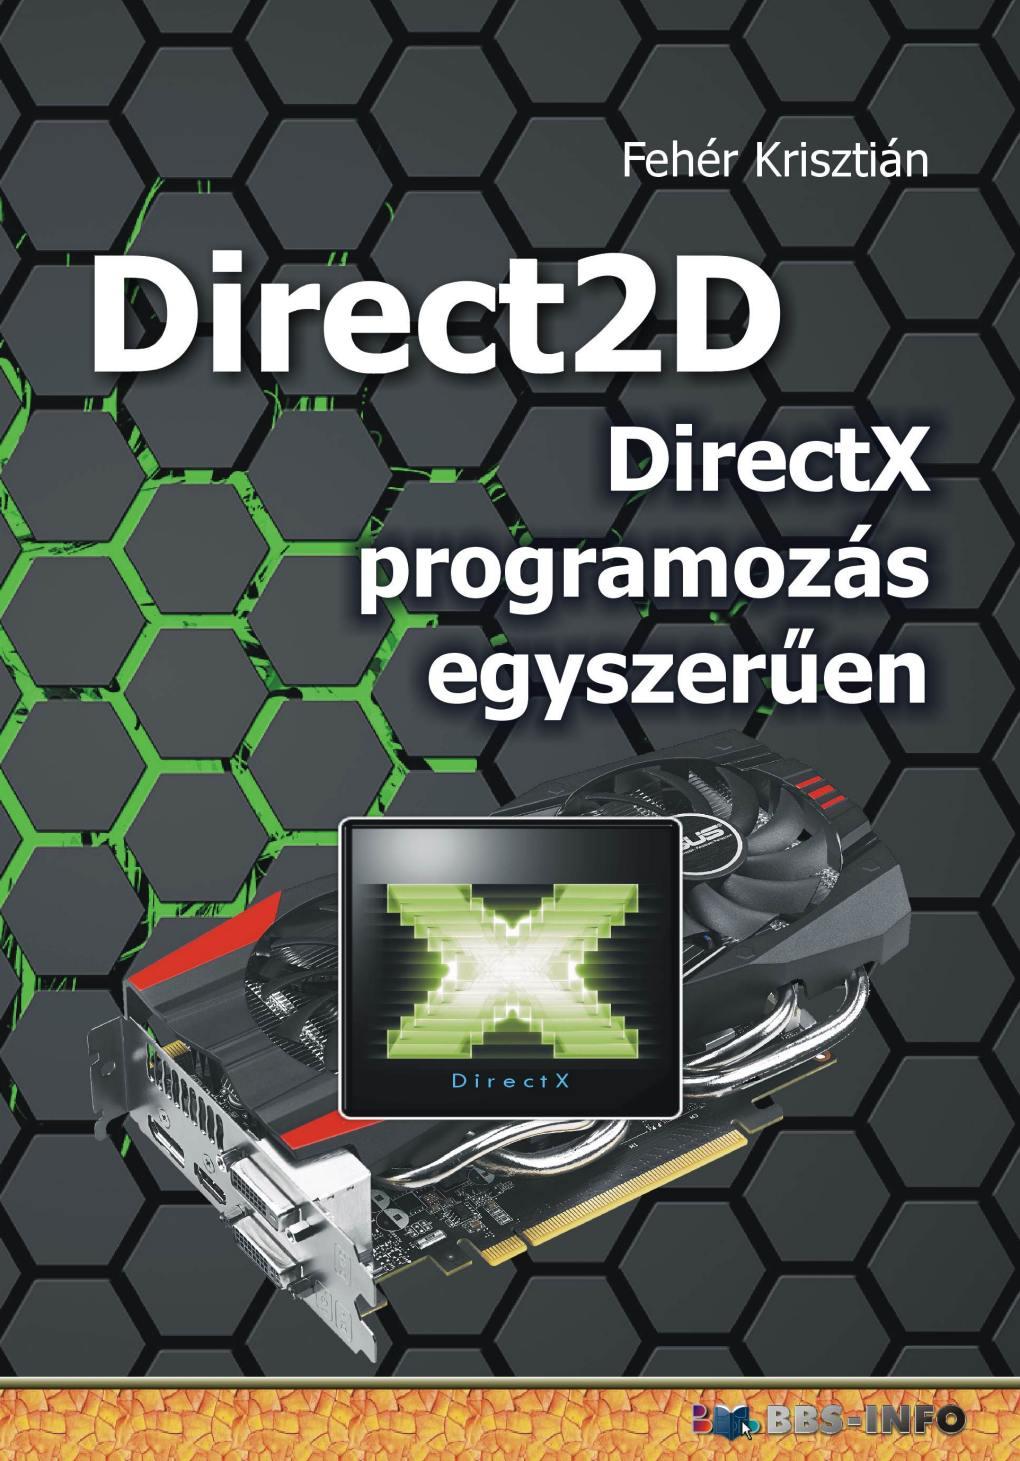 Fehér Krisztián - Direct2D - DirectX programozás egyszerűen